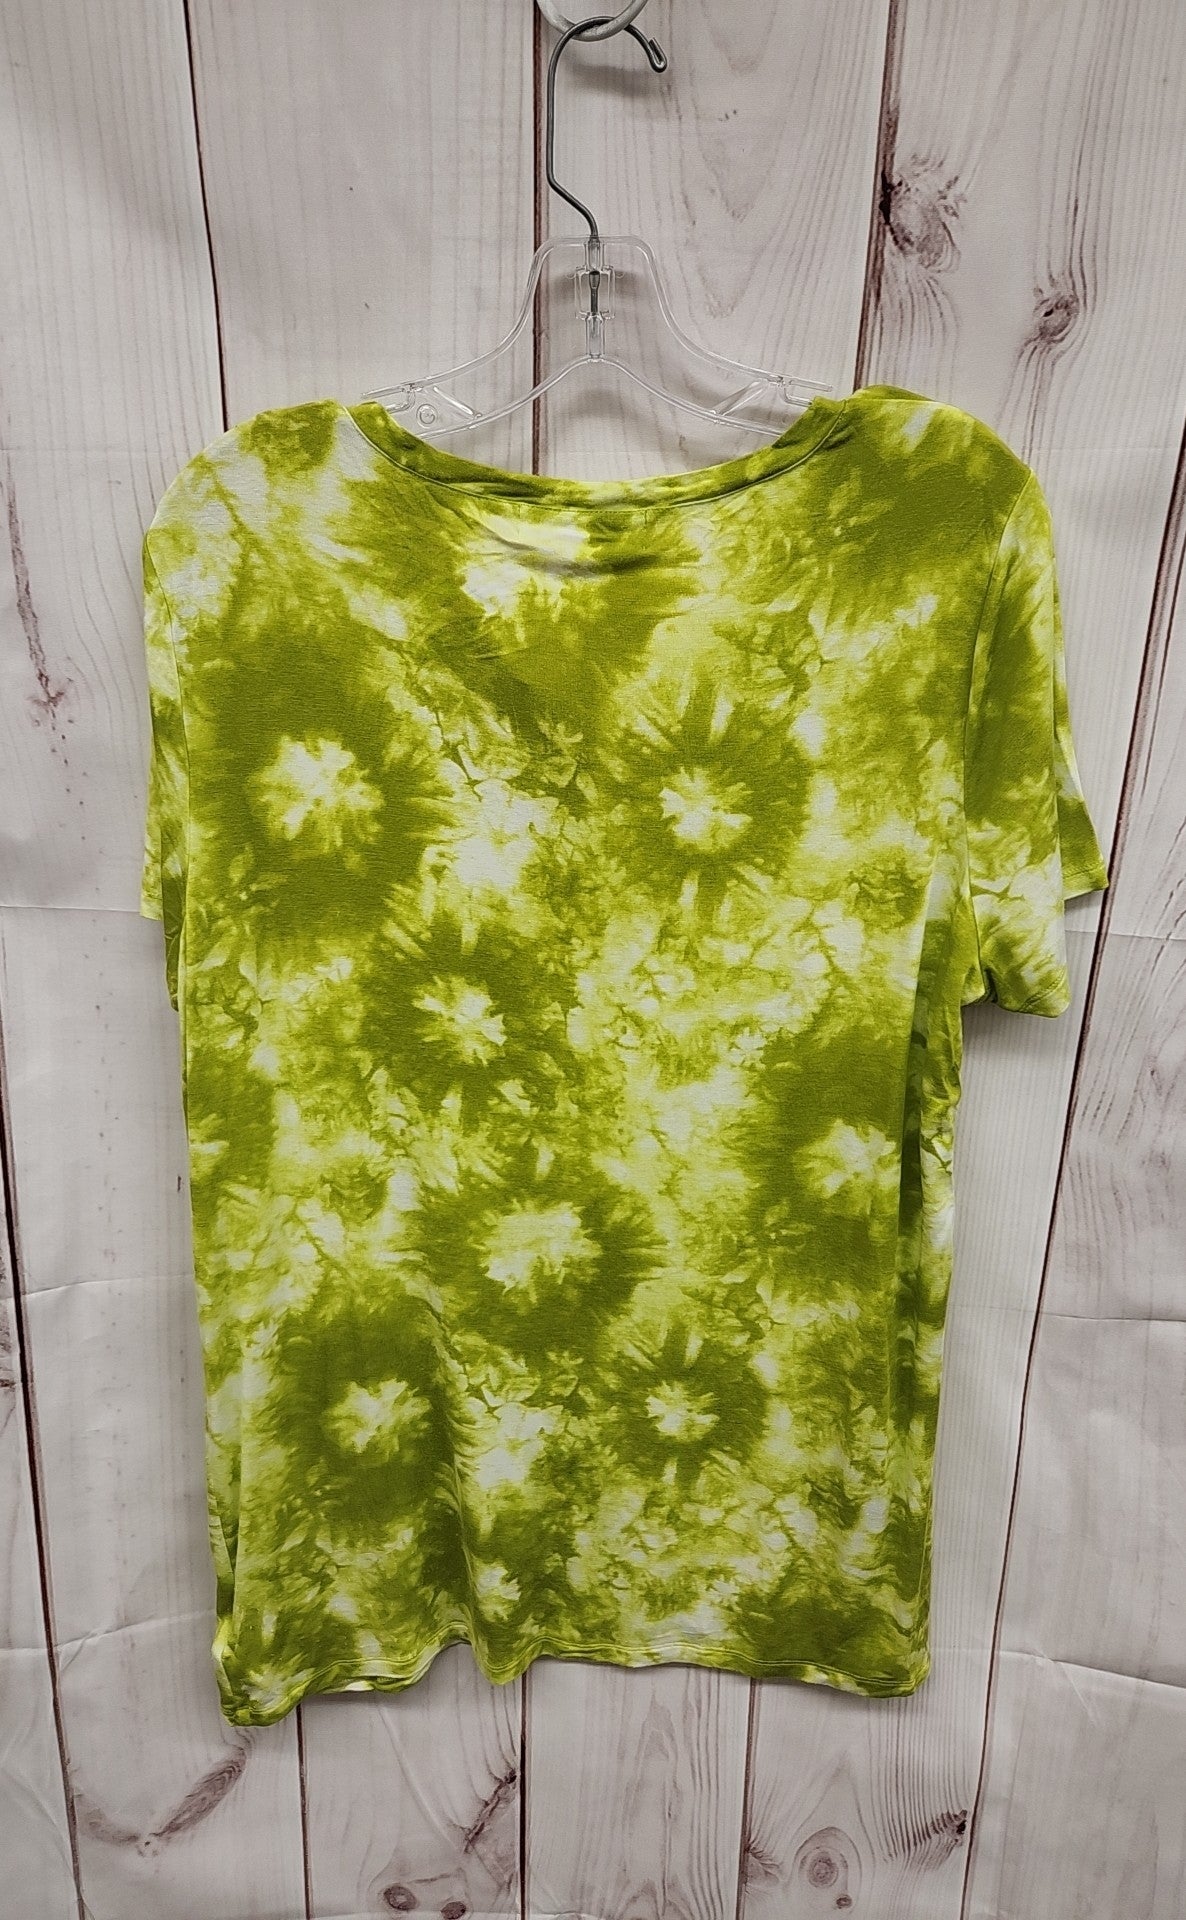 Michael Kors Women's Size XL Green Short Sleeve Top